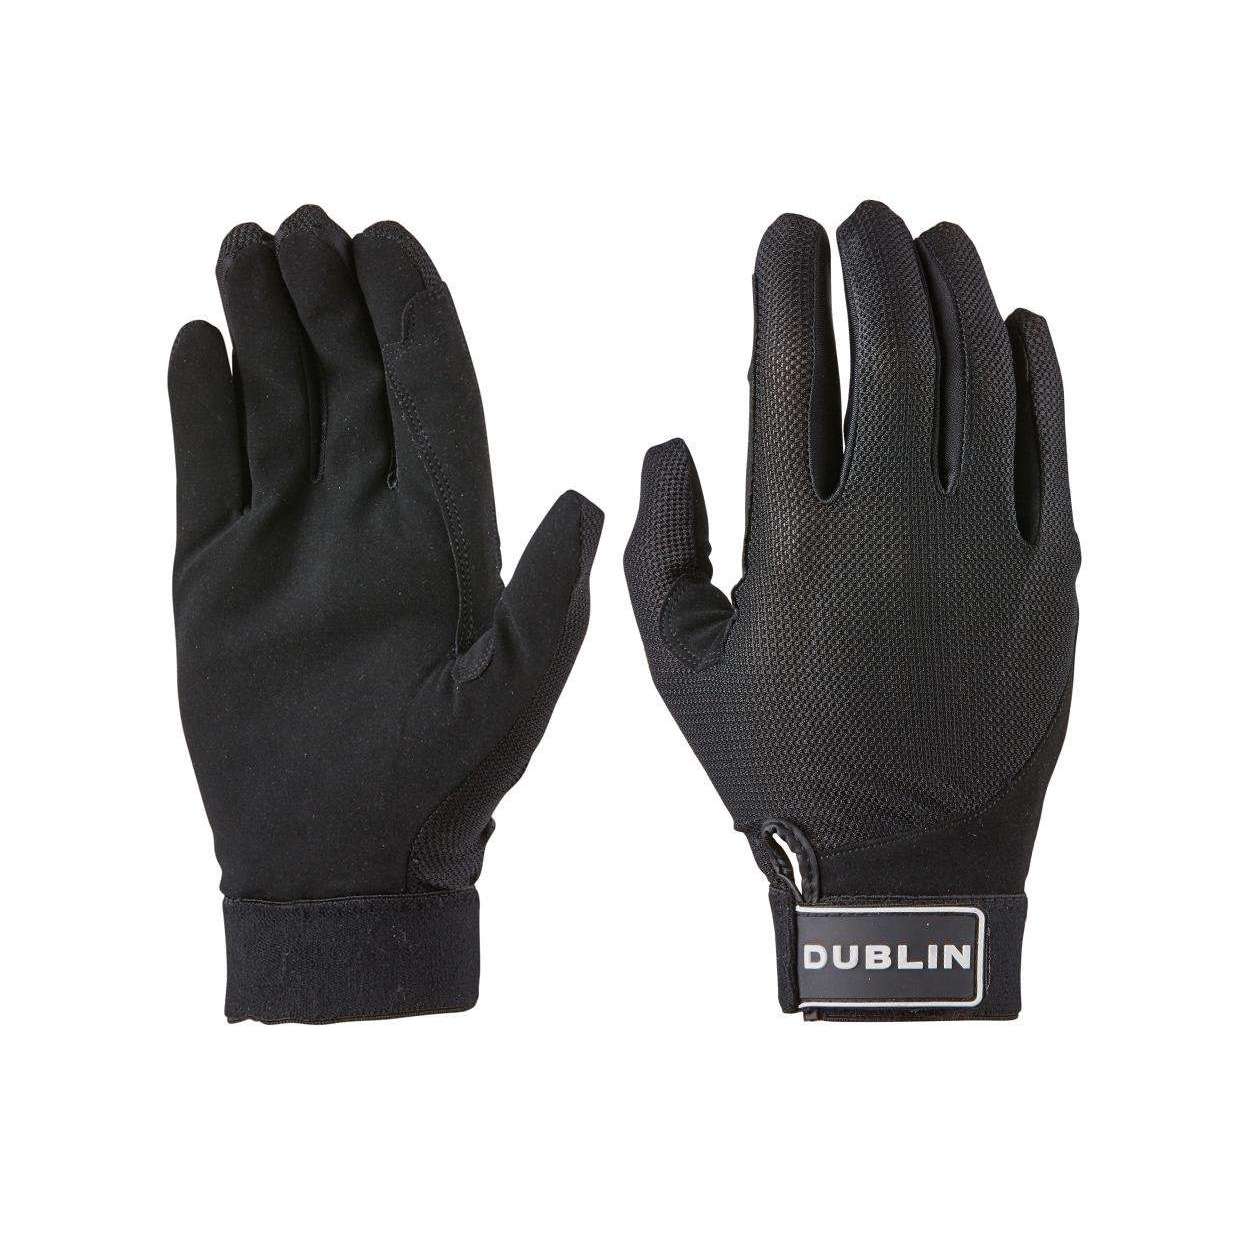 Dublin Meshback Riding Gloves